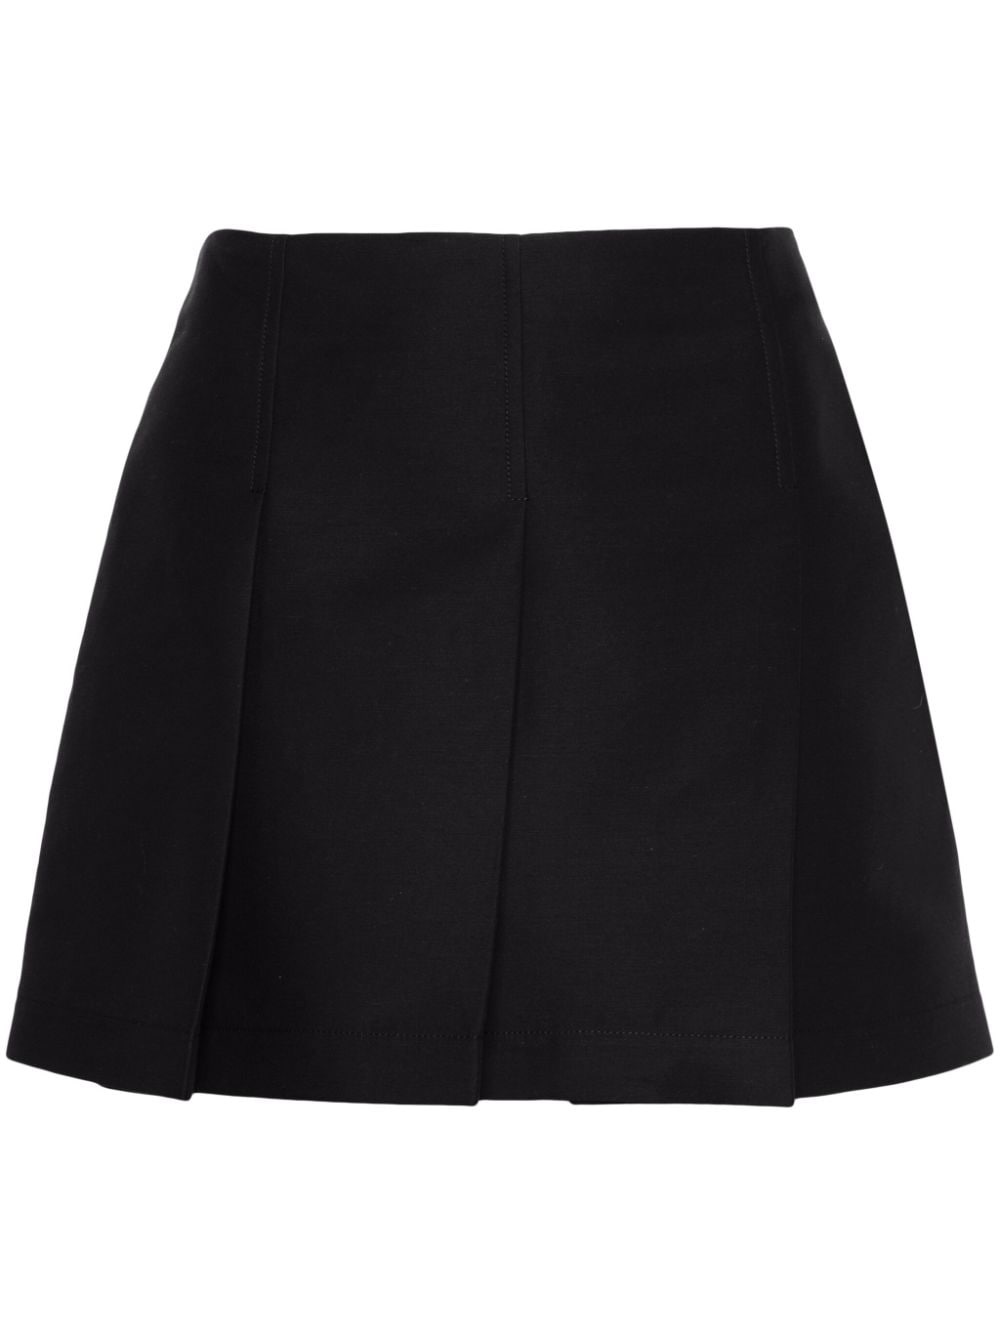 pleated cotton skirt - 1